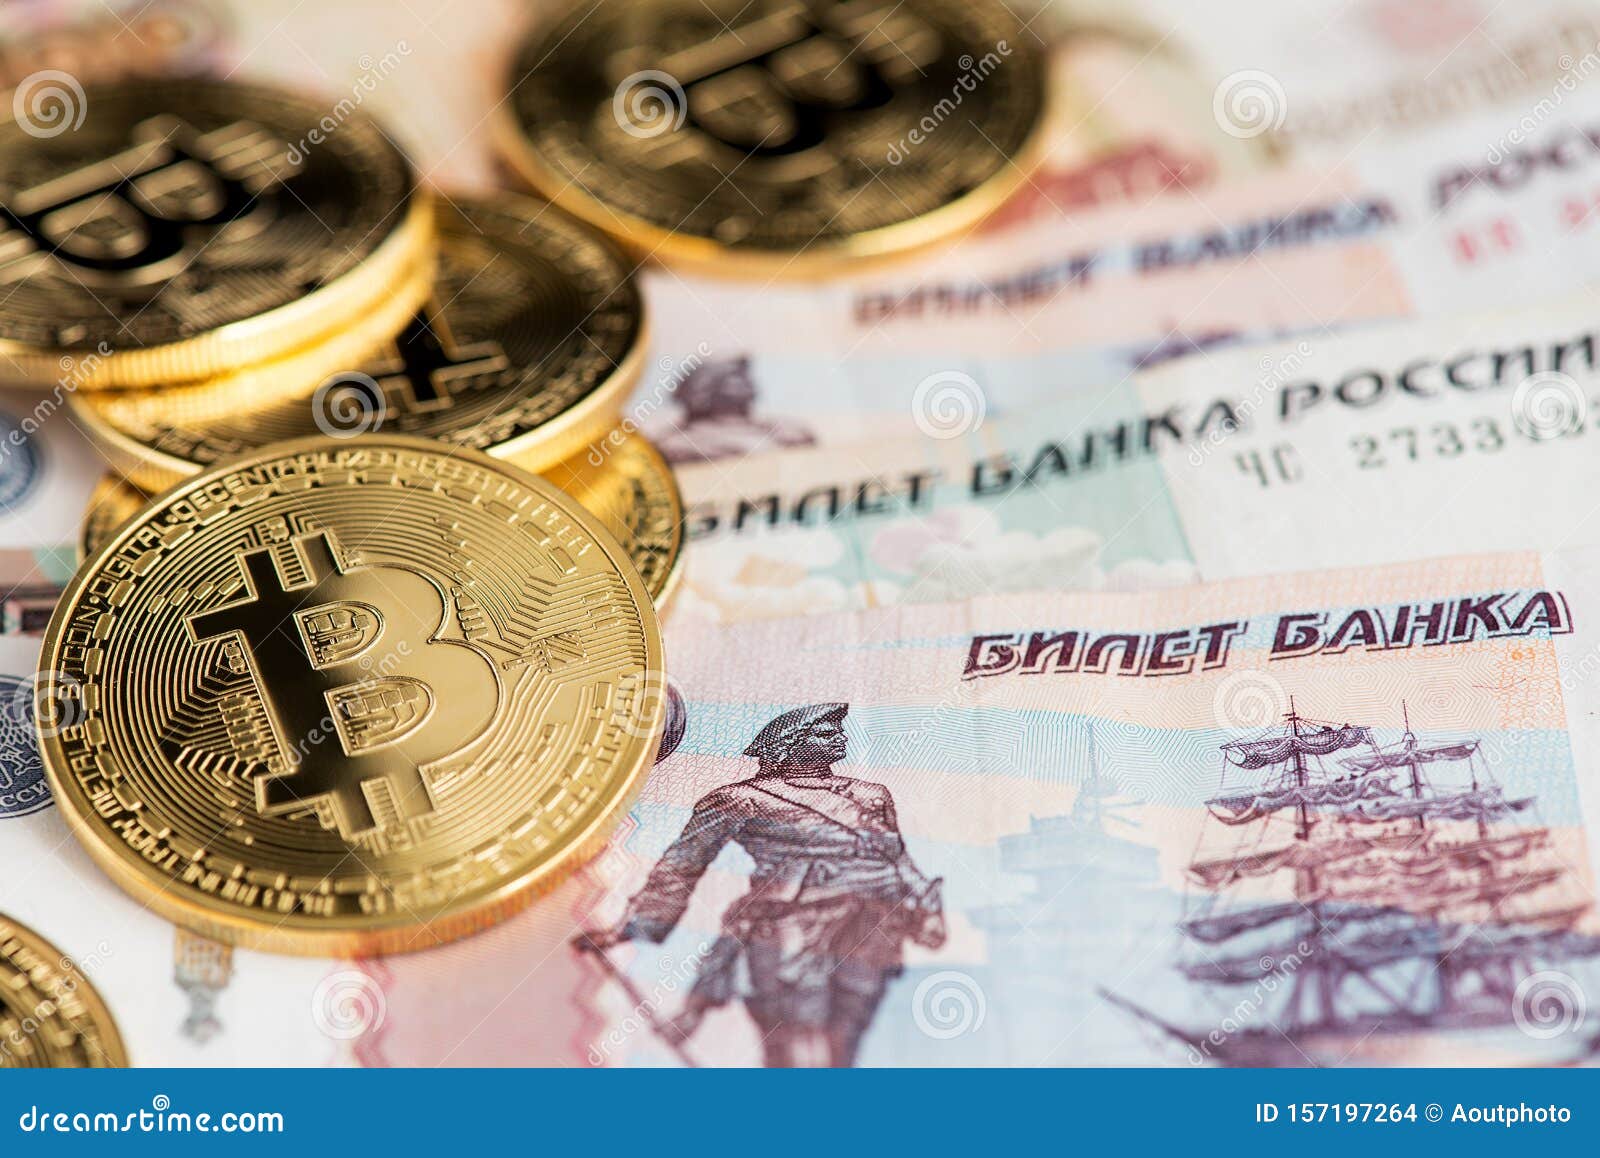 Курсы обмена биткоин в пскове сегодня обман в обменниках москвы